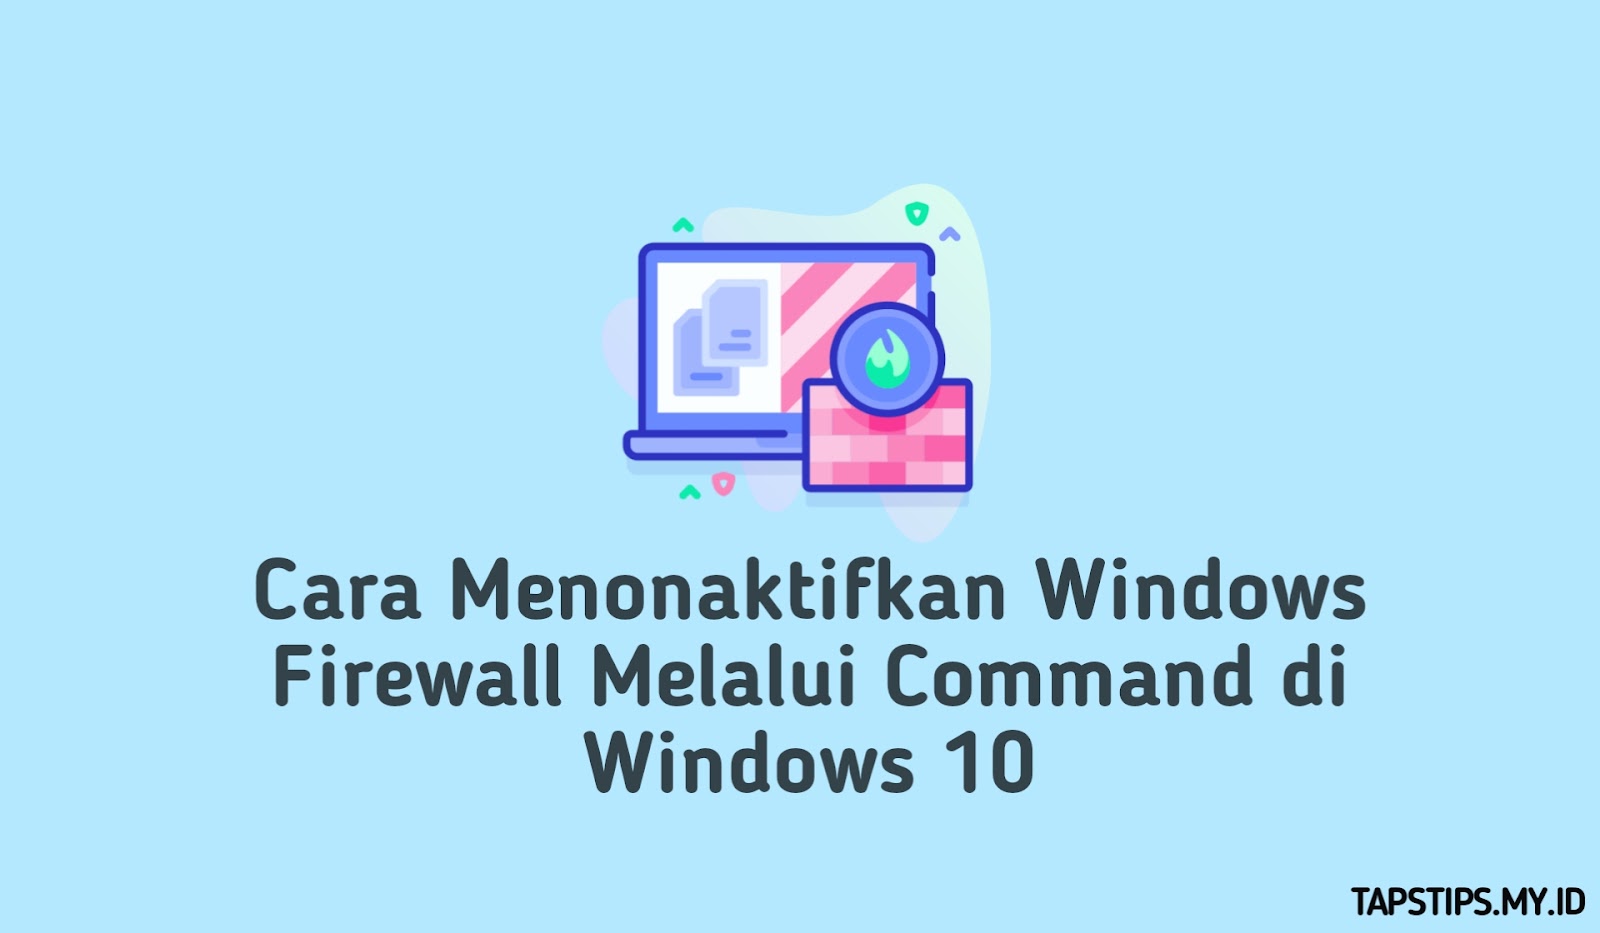 Cara Menonaktifkan Windows Firewall Melalui Command di Windows 10